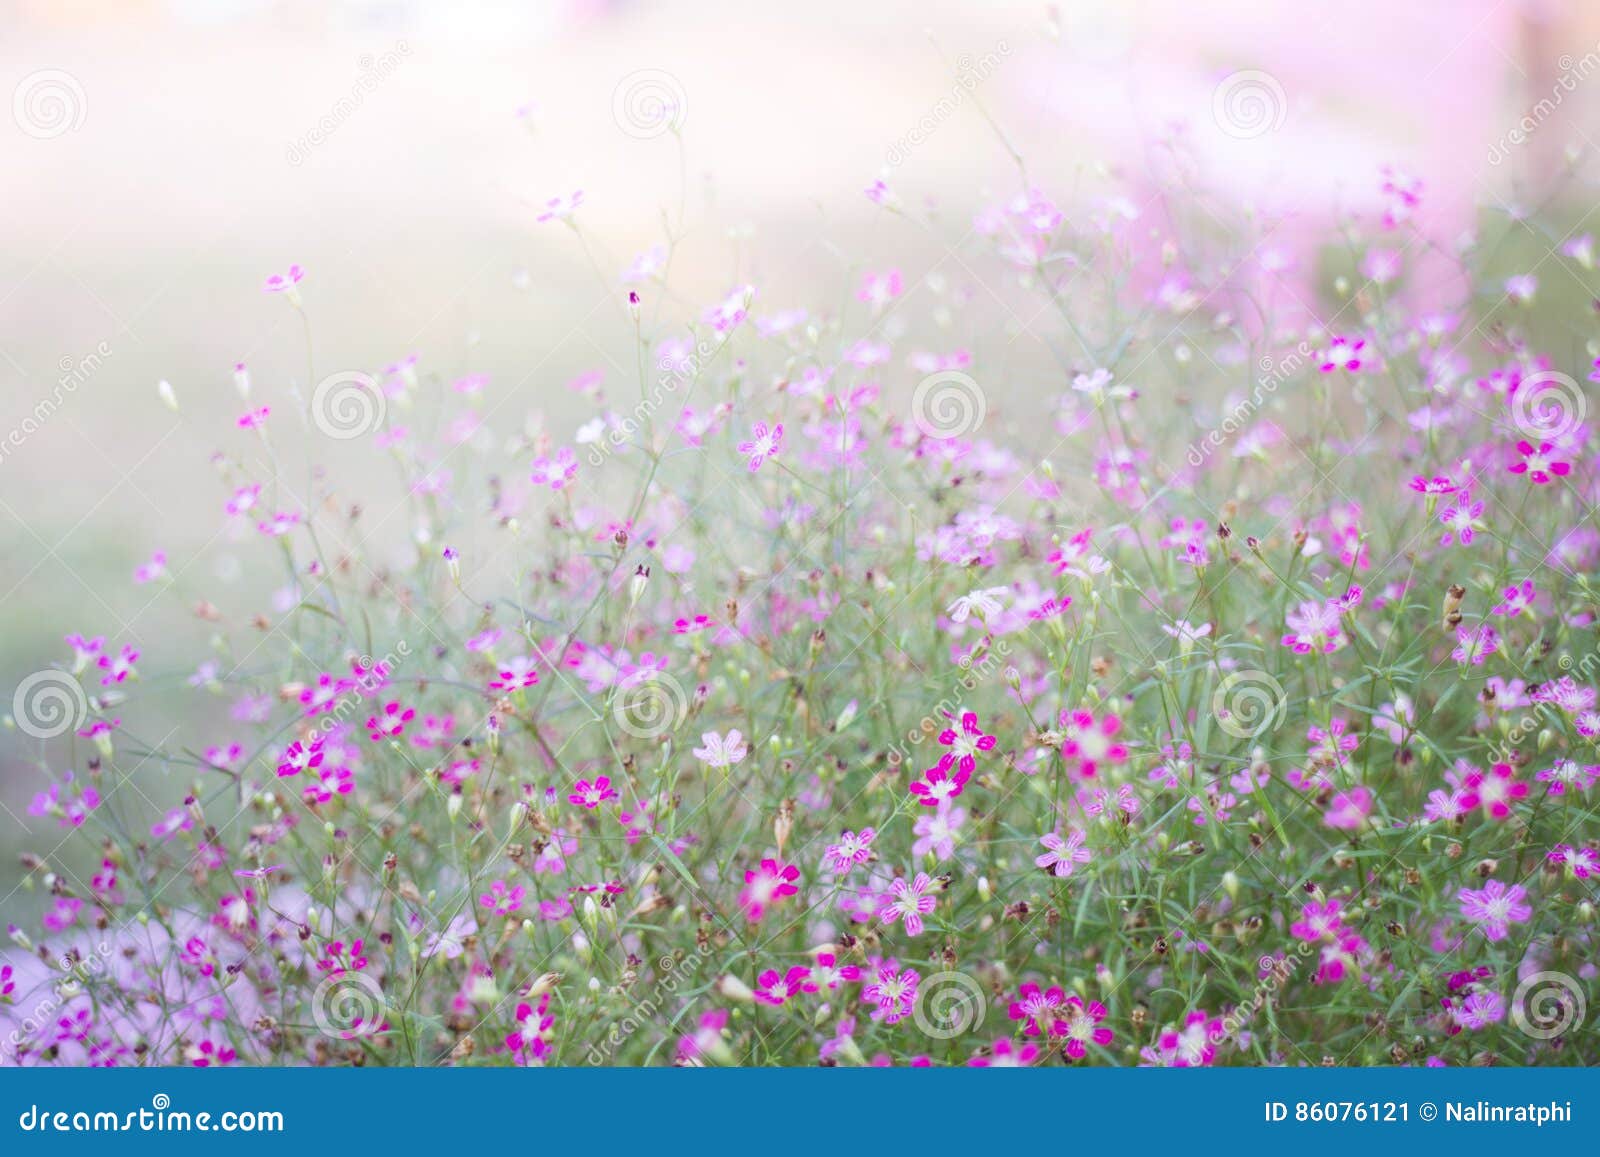 Mini Fleurs Roses Romantiques De Ressort Image stock - Image du ...